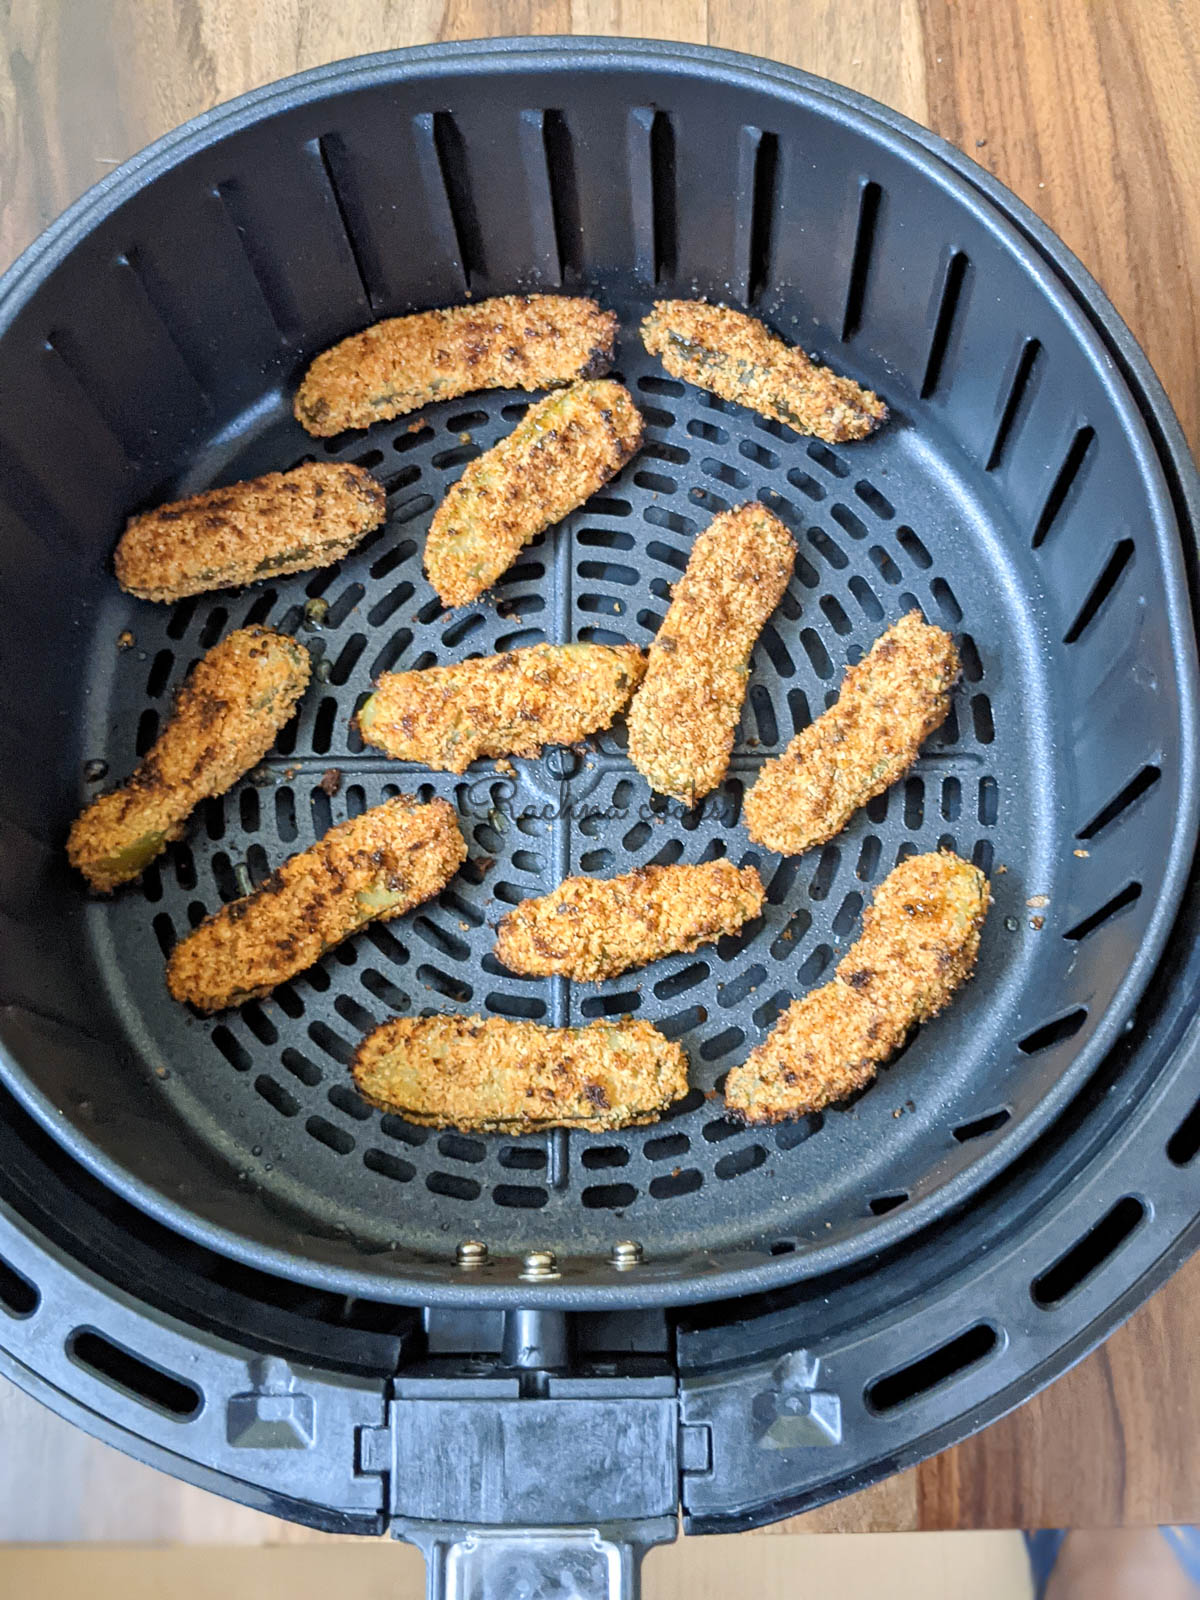 Pickles in air fryer basket